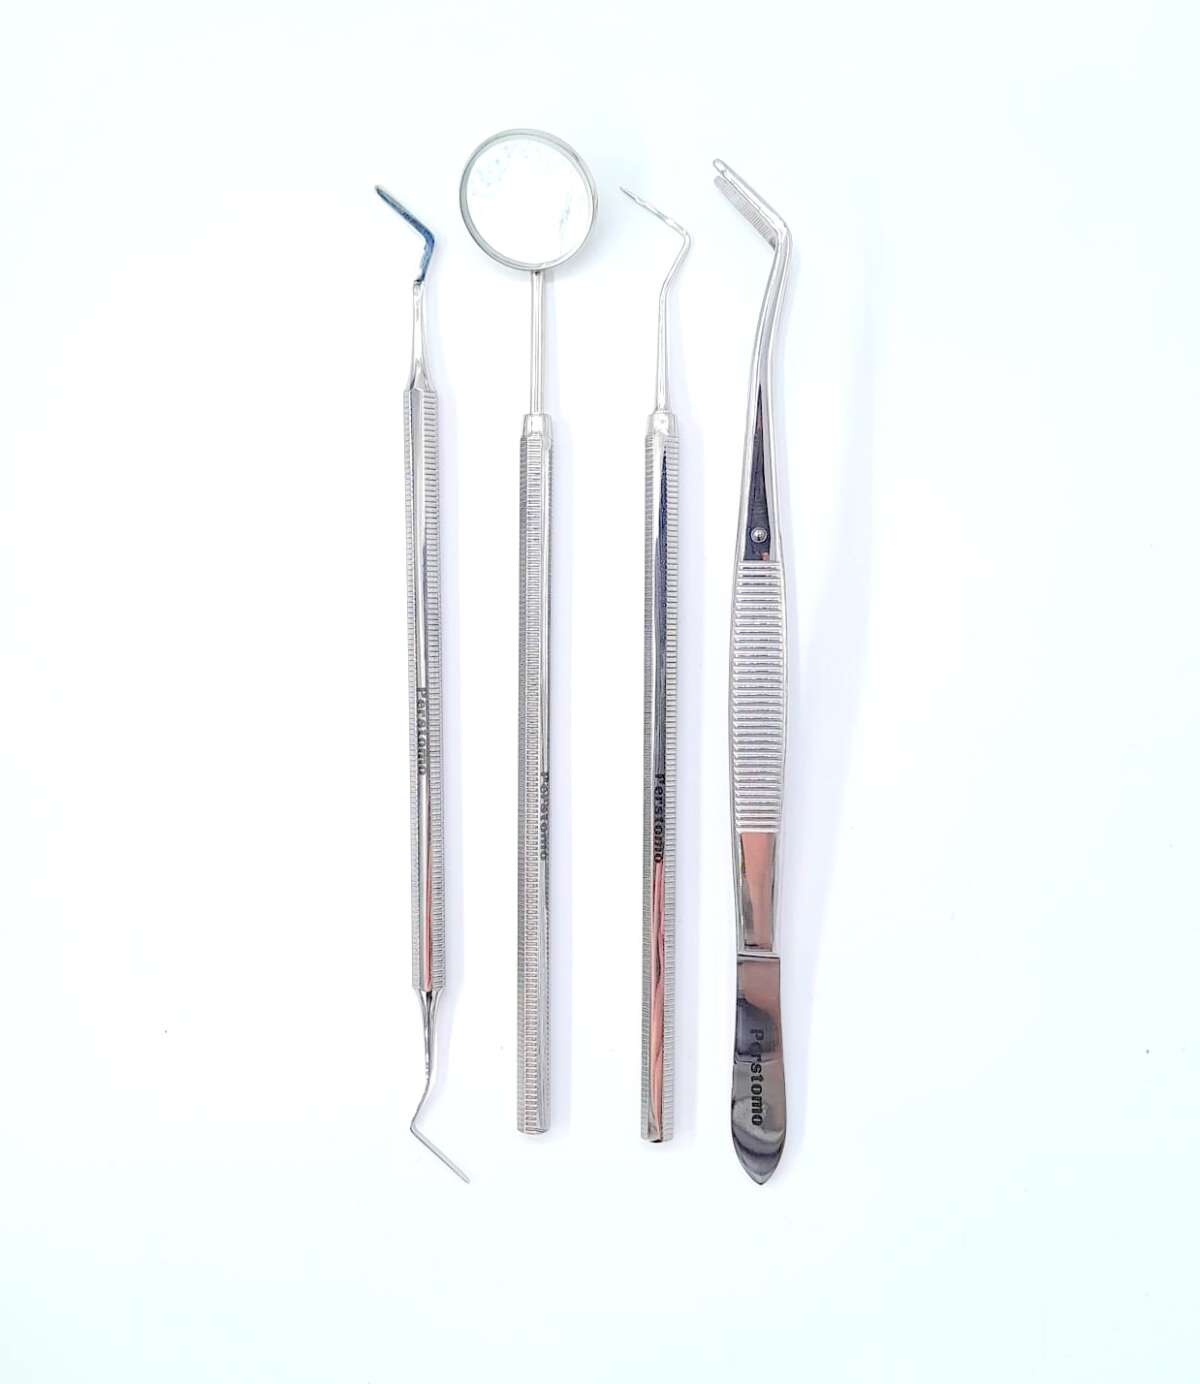 Trusa stomatologica de consultatie cu 4 instrumente SCR4